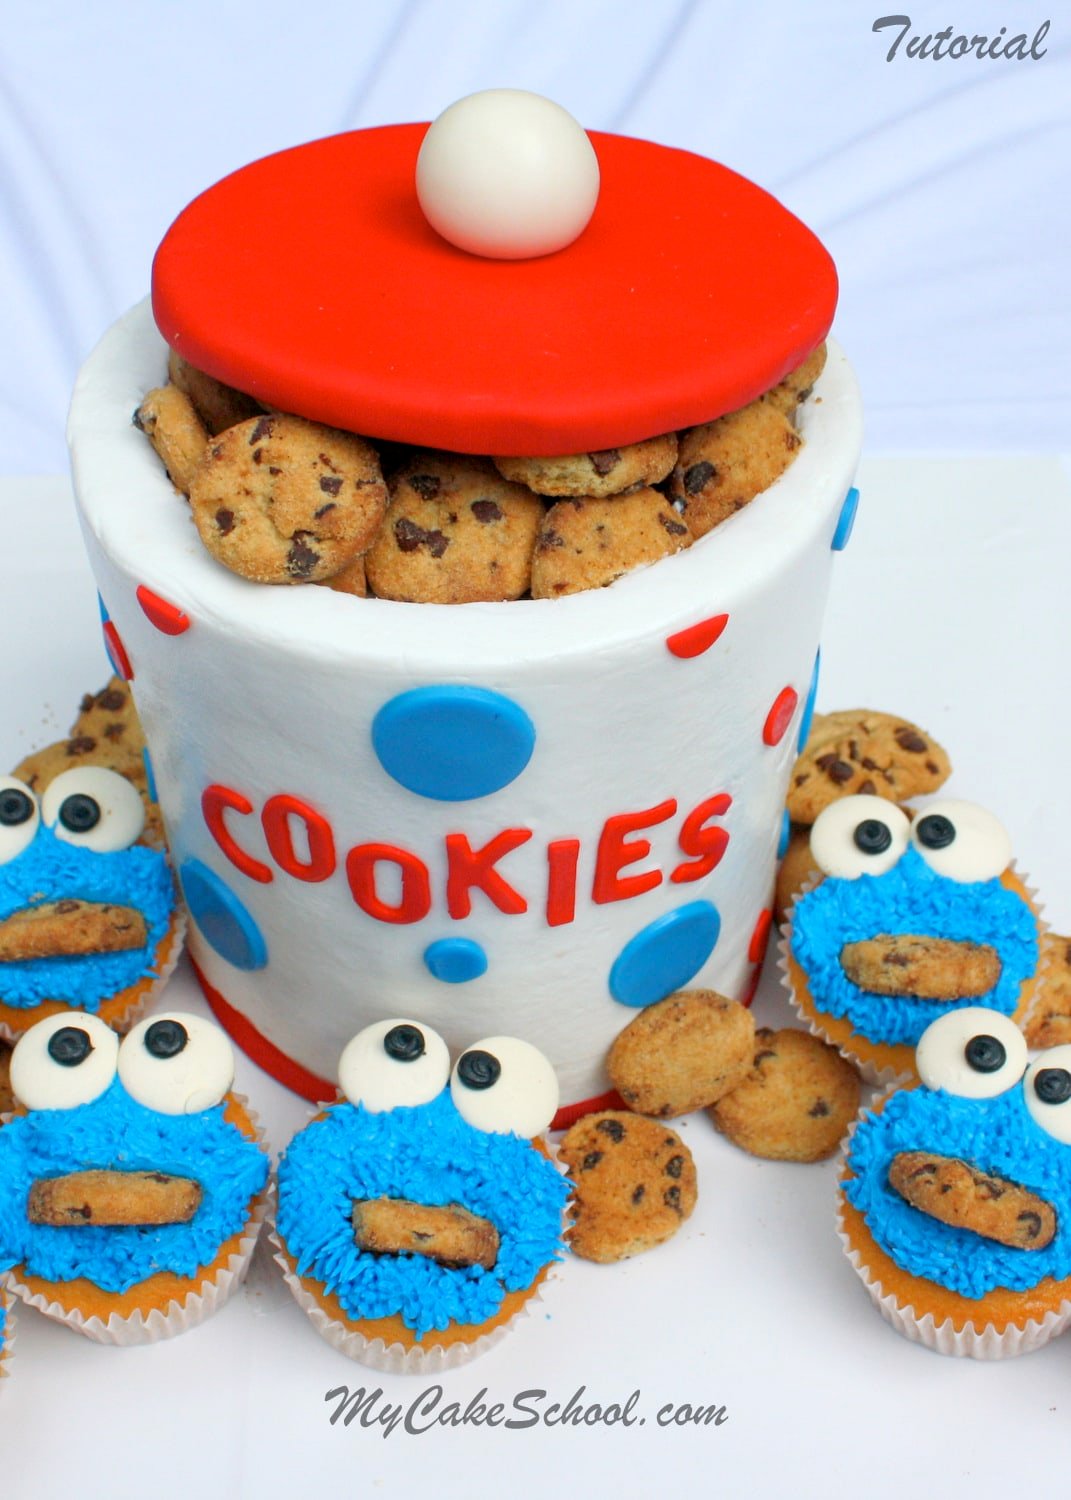 Cookie Jar Cake with Cookie Monster Cupcakes~ Blog Tutorial - My Cake School